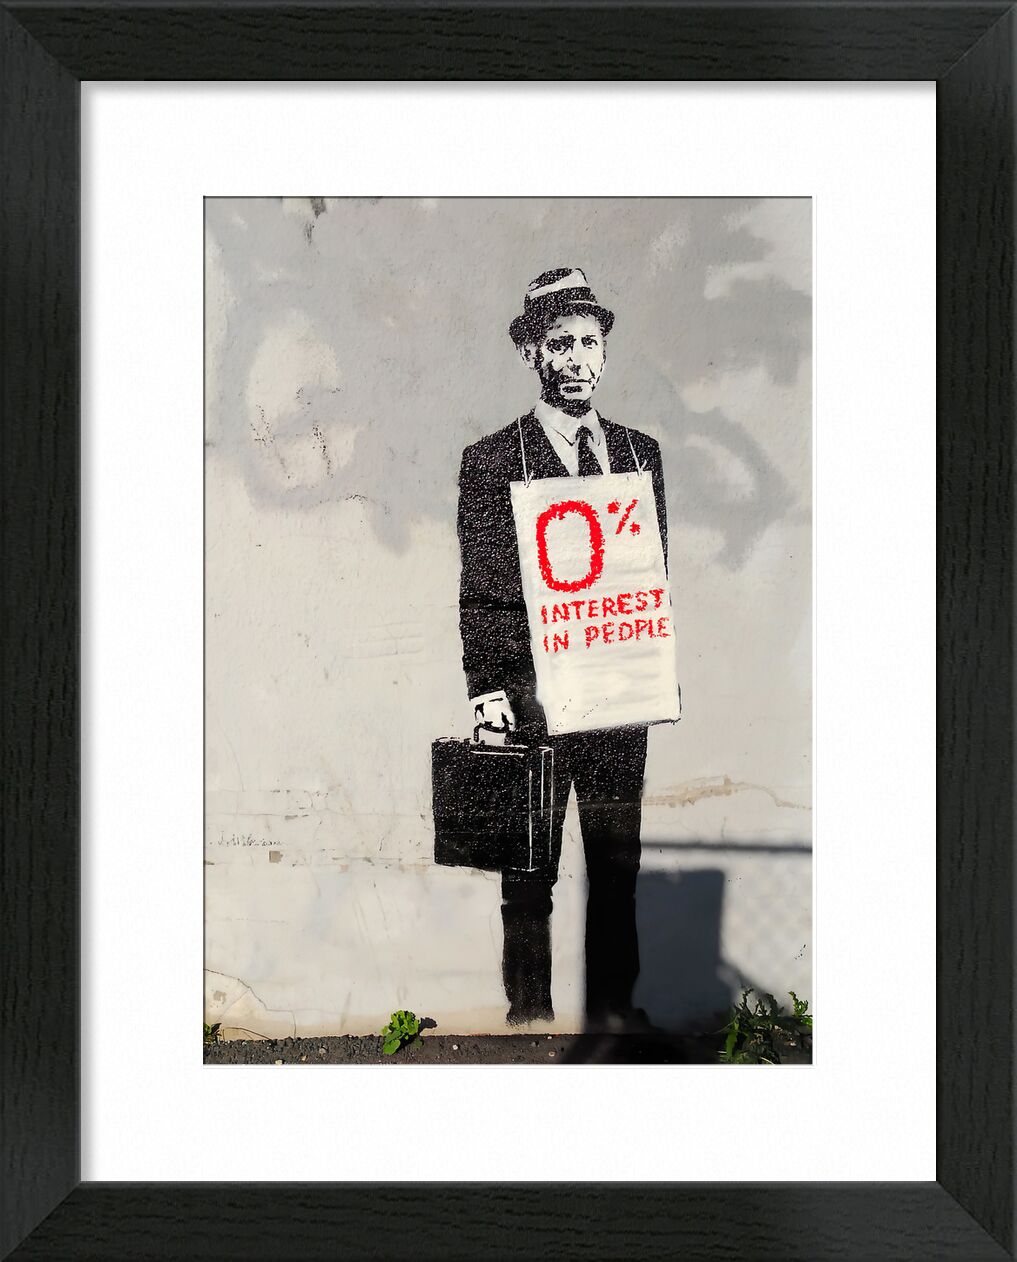 0% Interest - BANKSY von Bildende Kunst, Prodi Art, banksy, Menschen, Graffiti, arbeiten, Arbeiter